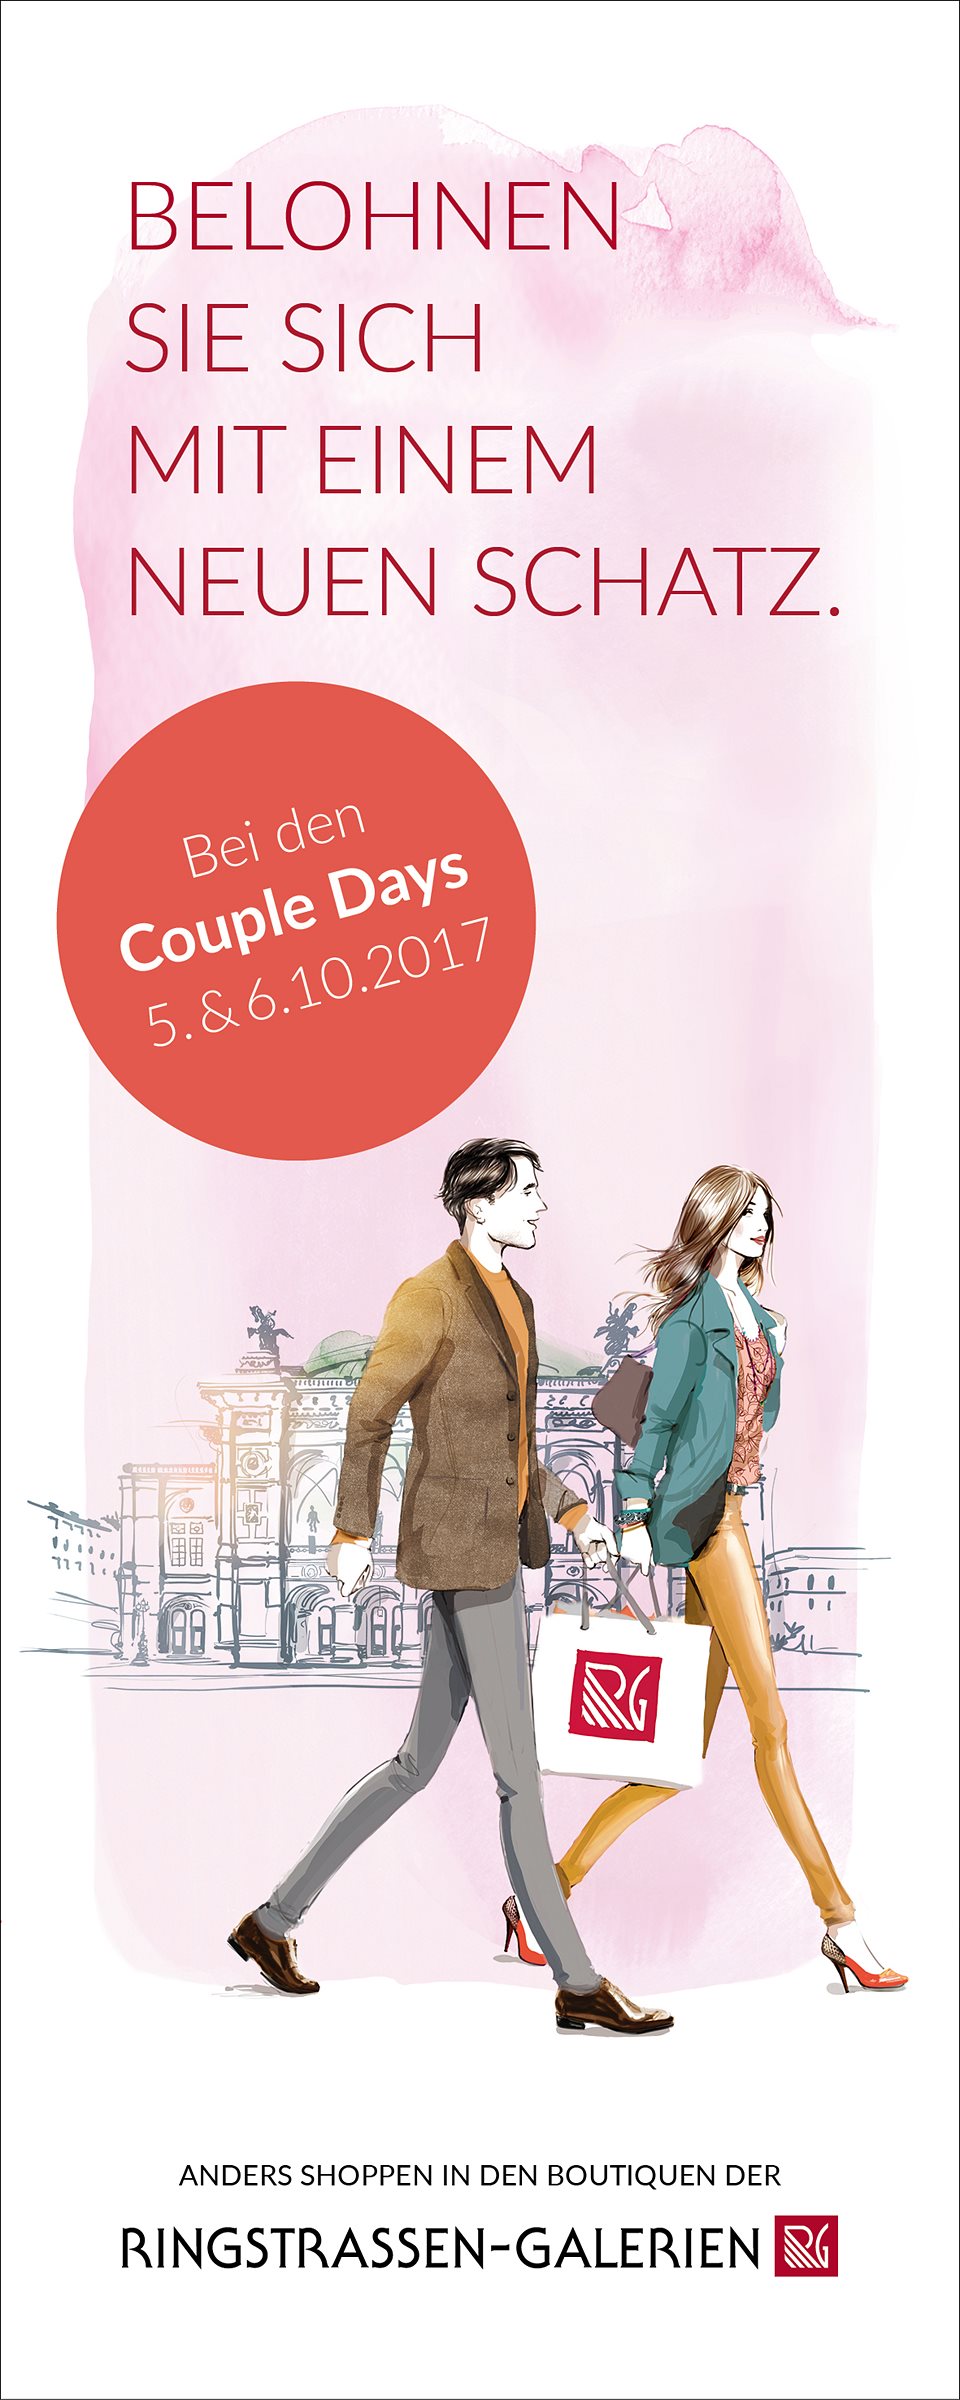 Couple Days in den Ringstrassen-Galerien